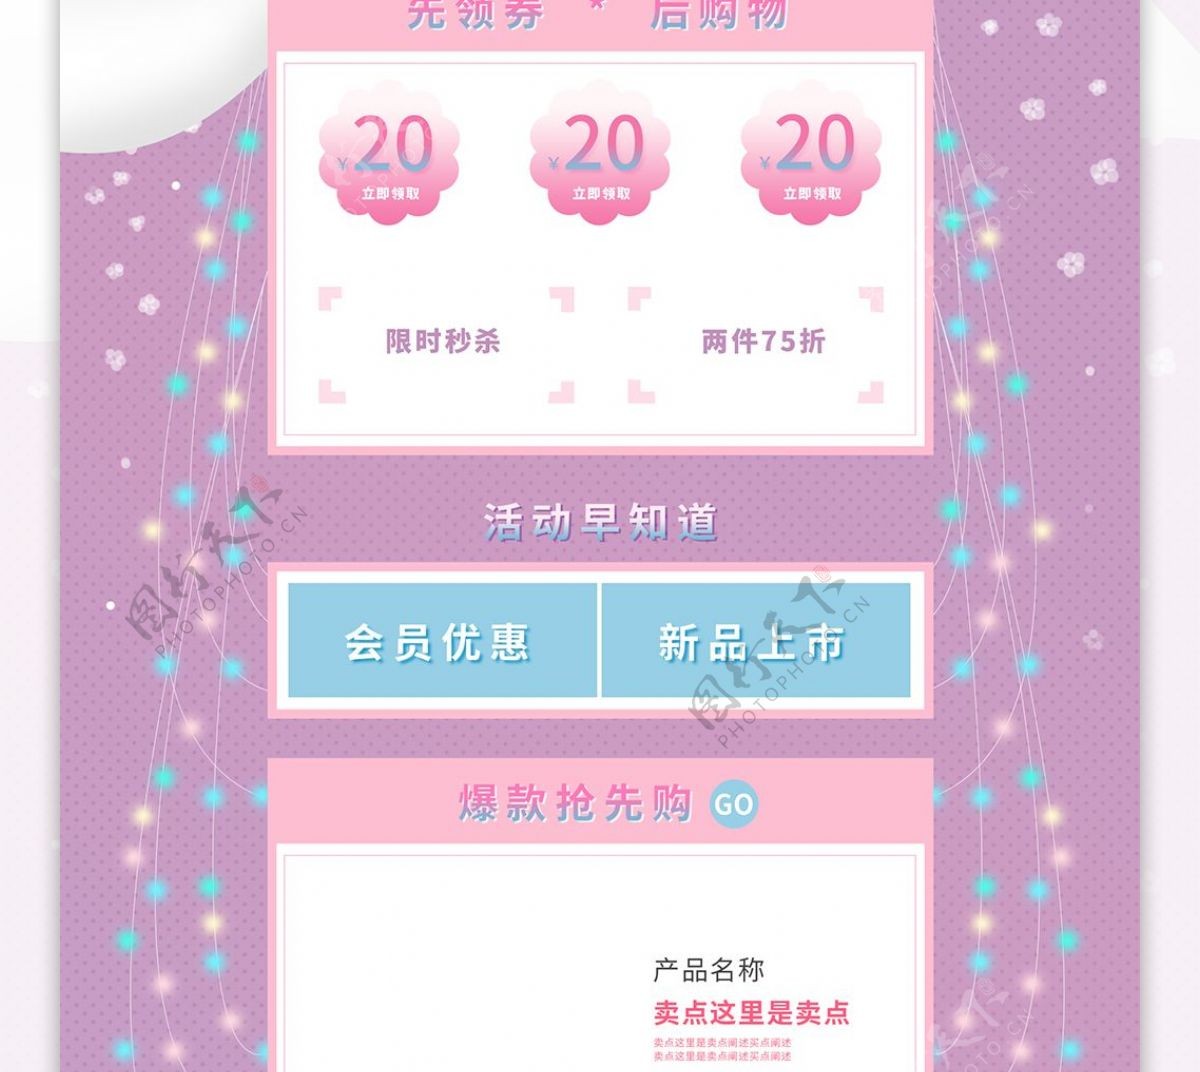 粉紫色清新手绘风2019天猫婚博会首页